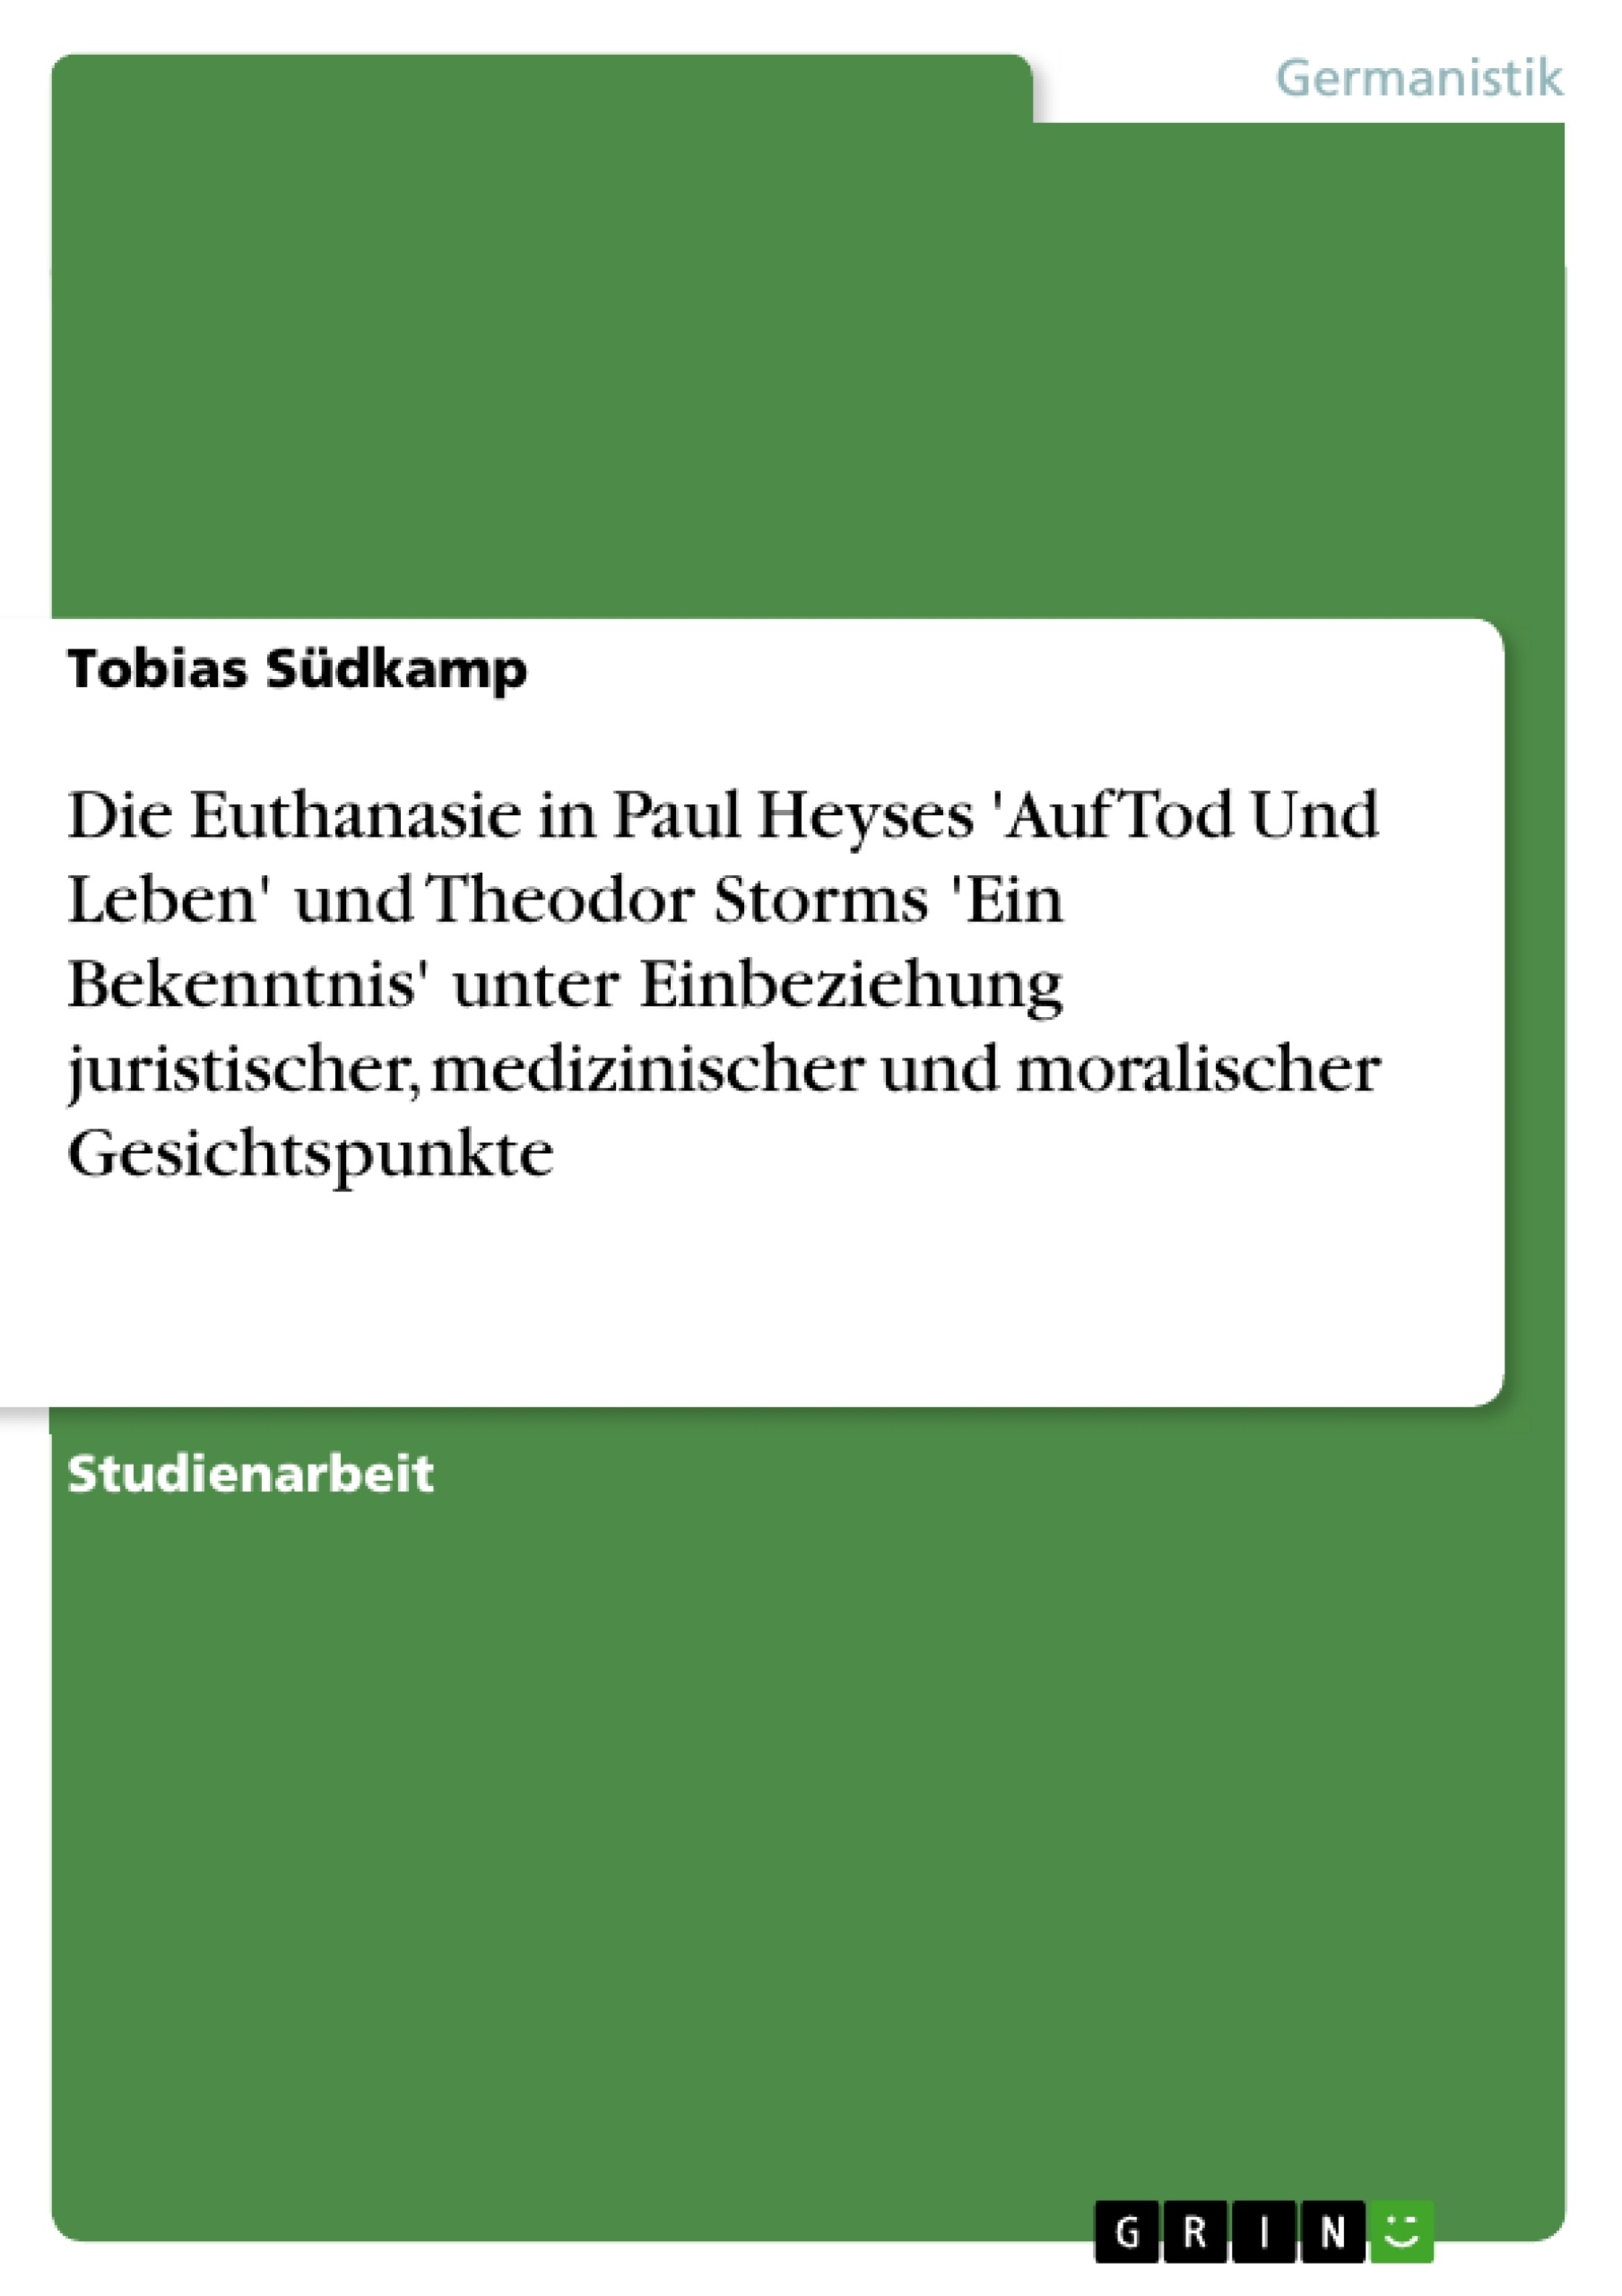 Title: Die Euthanasie in Paul Heyses 'Auf Tod Und Leben' und Theodor Storms 'Ein Bekenntnis' unter Einbeziehung juristischer, medizinischer und moralischer Gesichtspunkte